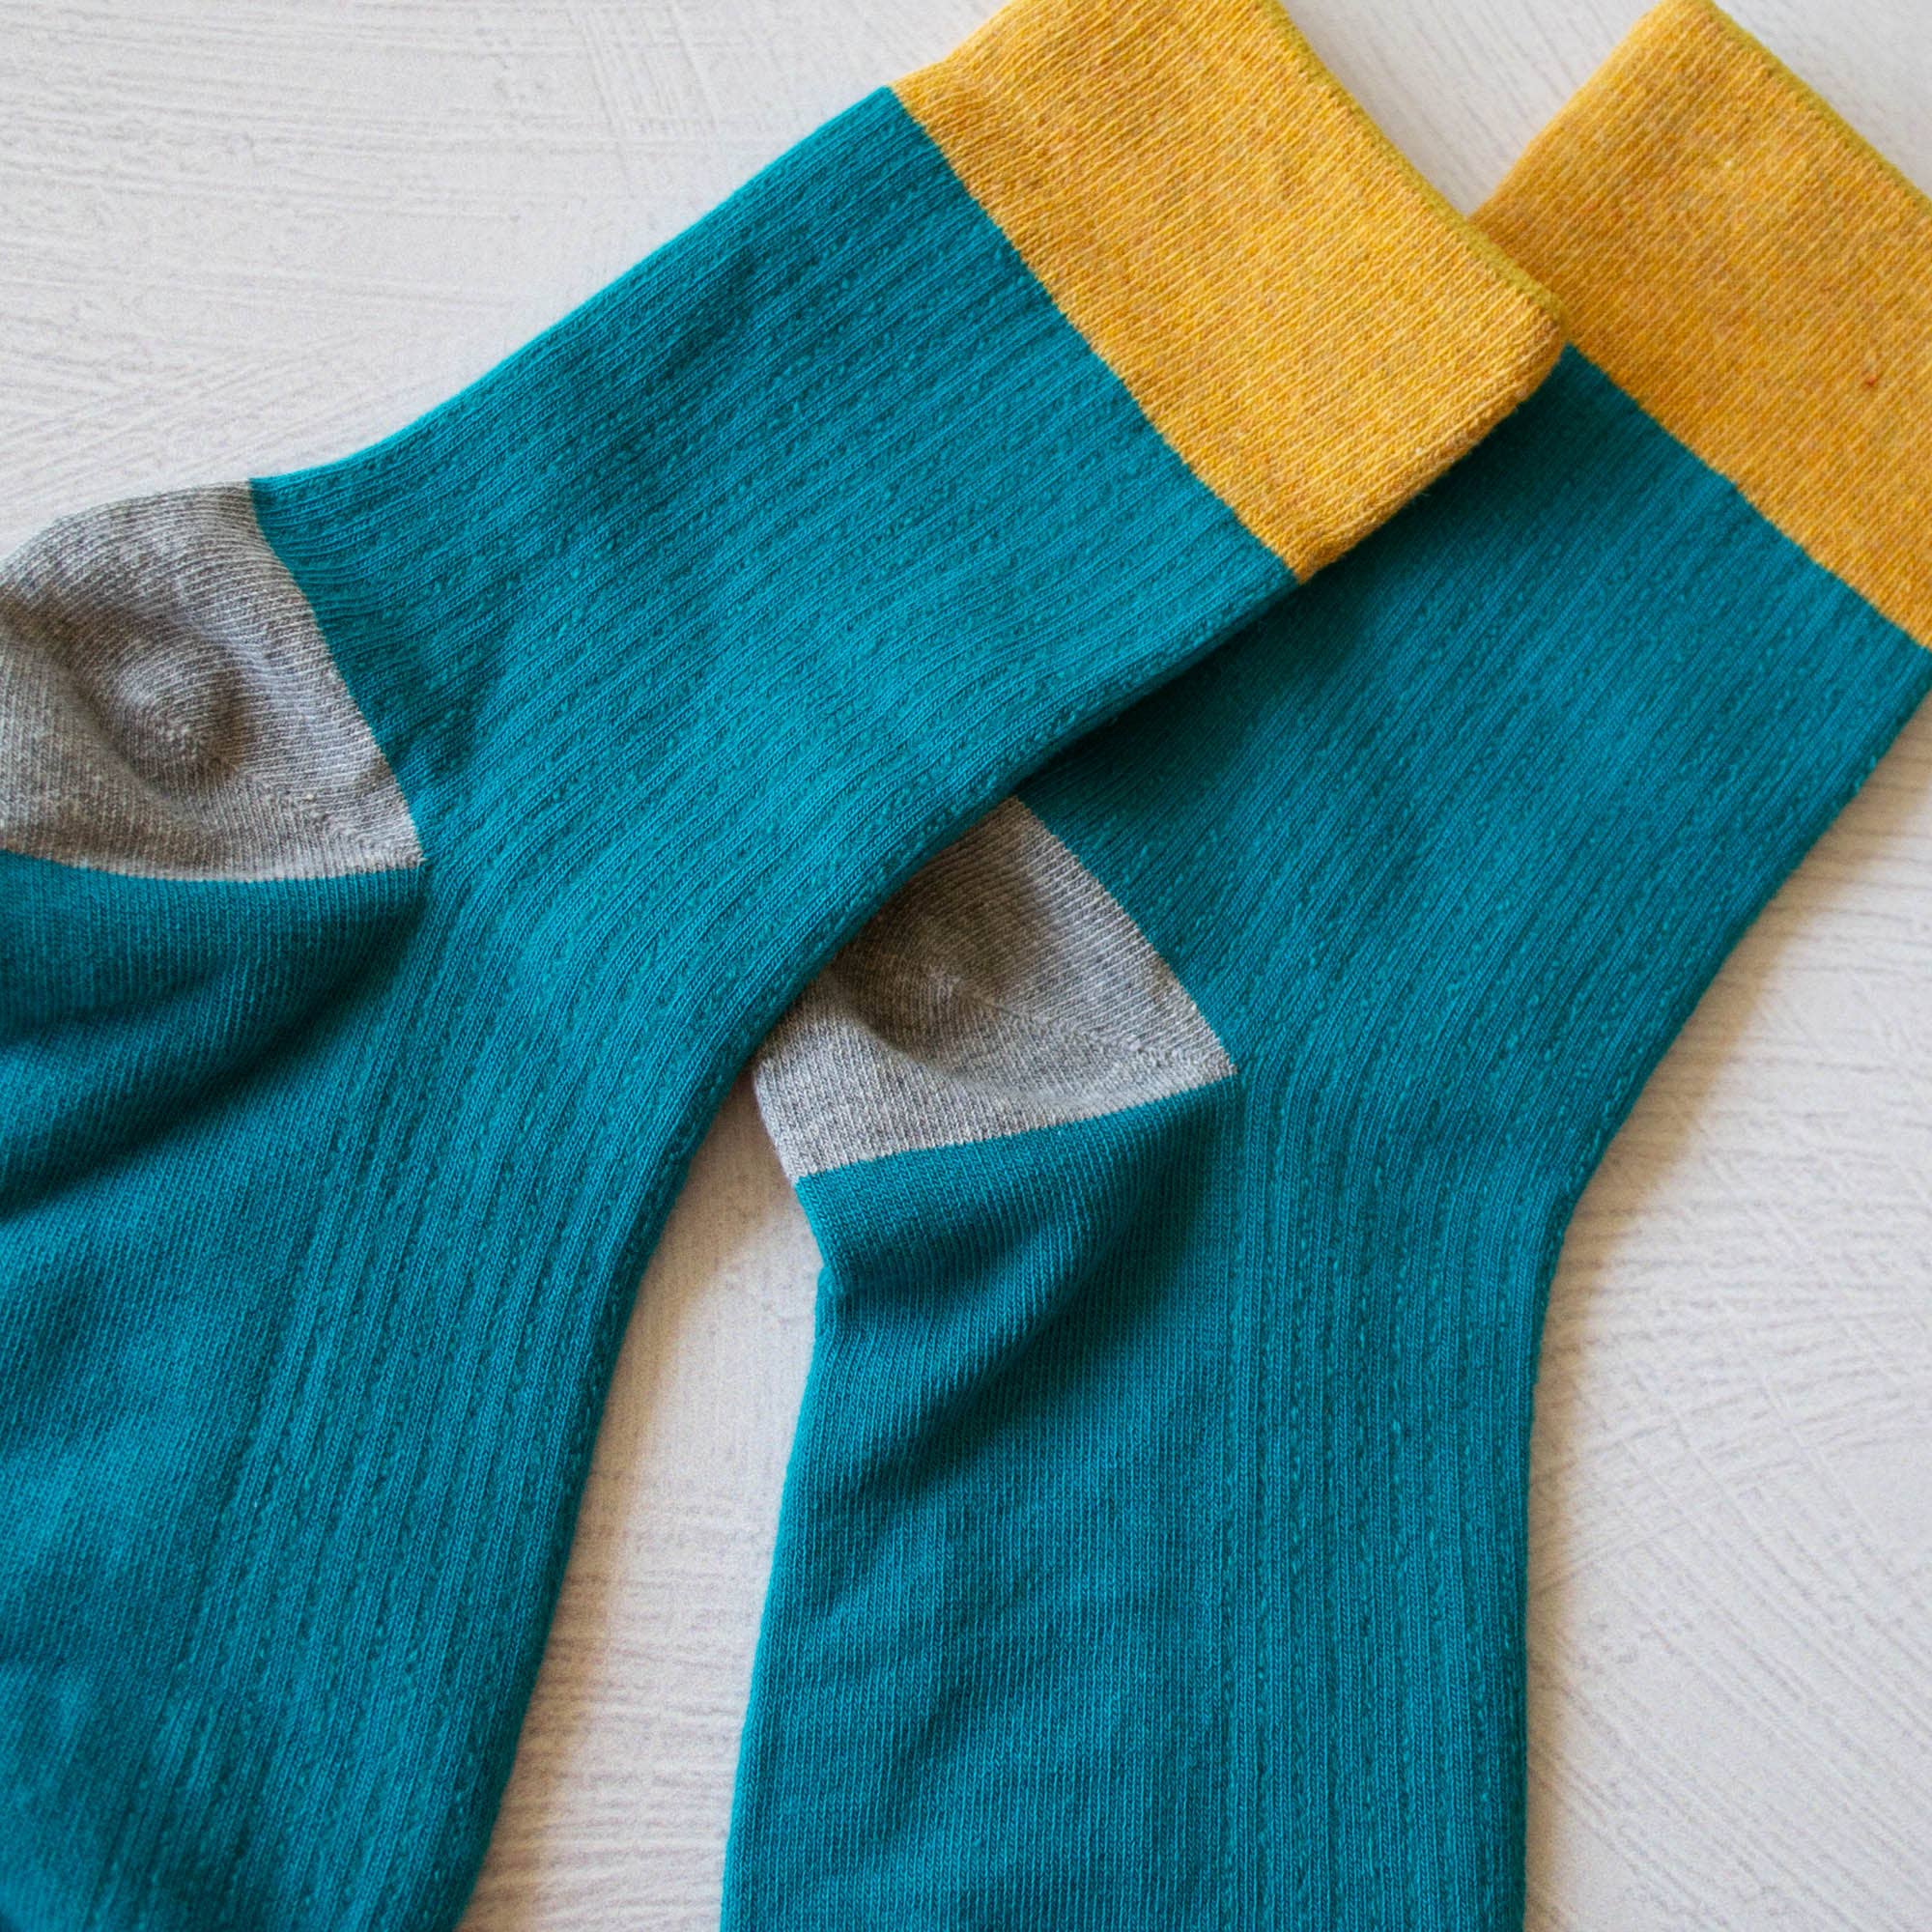 Color Block Casual Socks - Proper